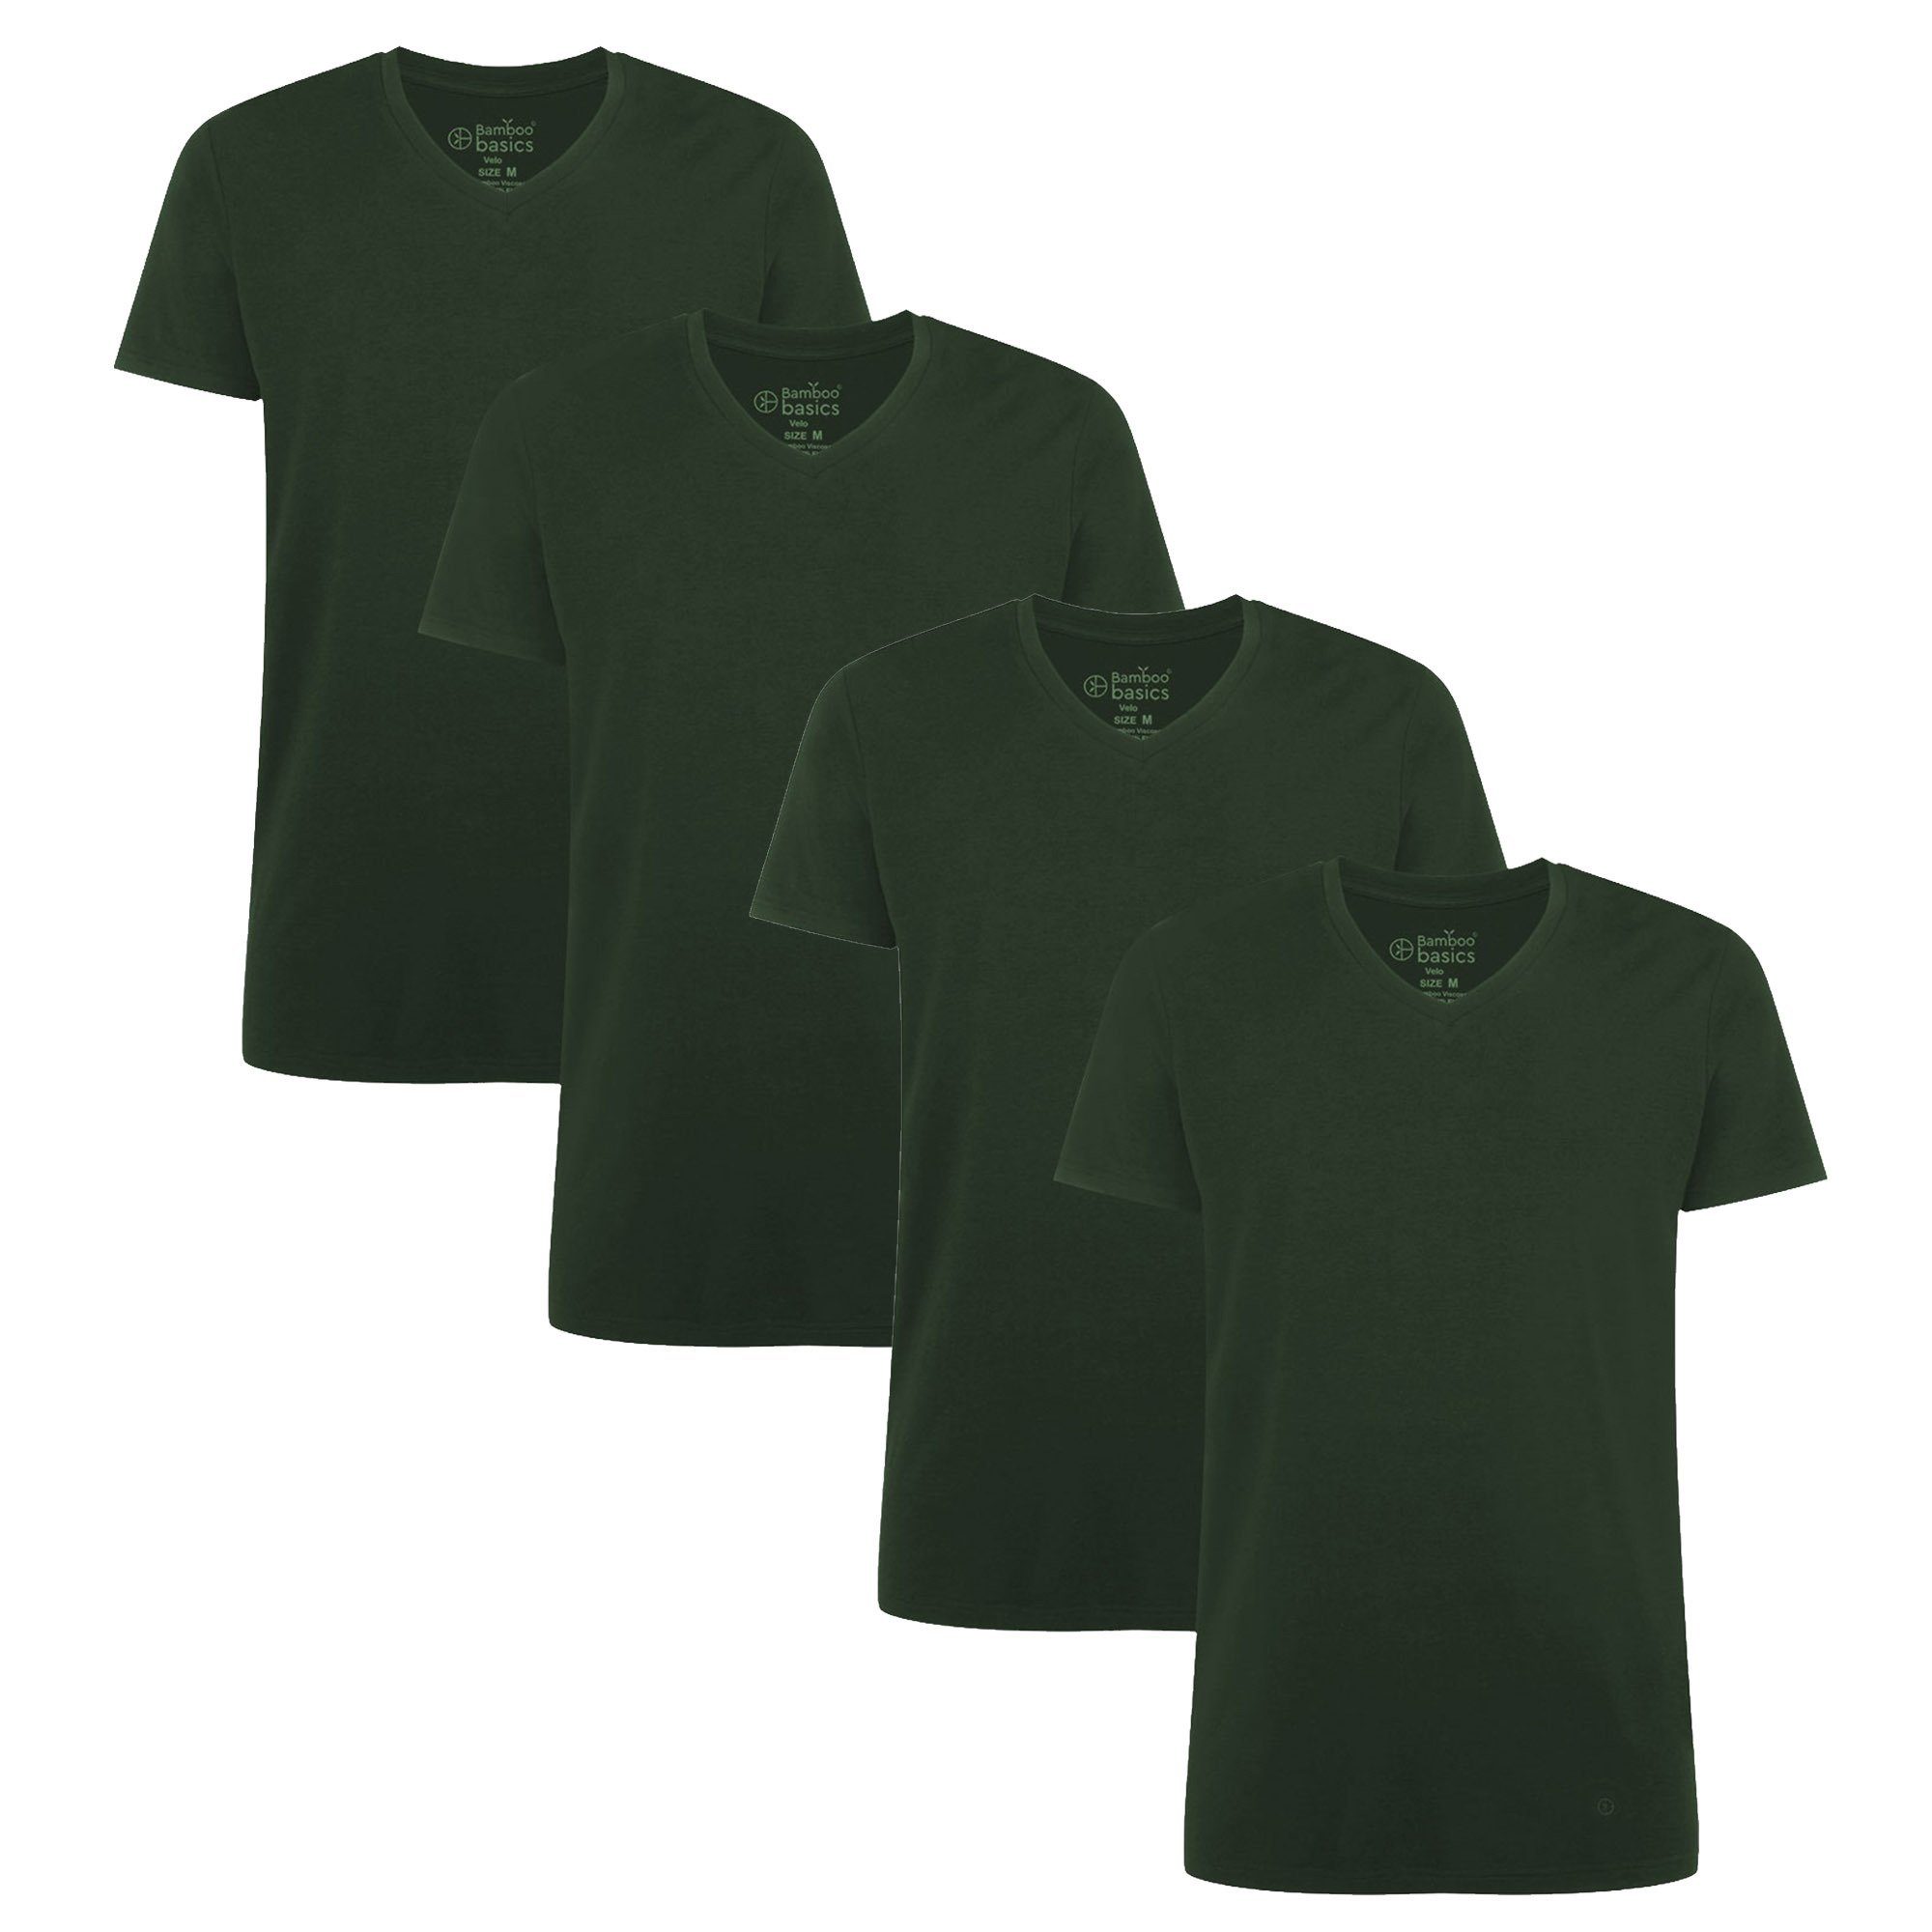 [Überraschender Preis realisiert! ] Bamboo basics T-Shirt Damen T-Shirt Grün 4er Pack - KATE, Unterhemd